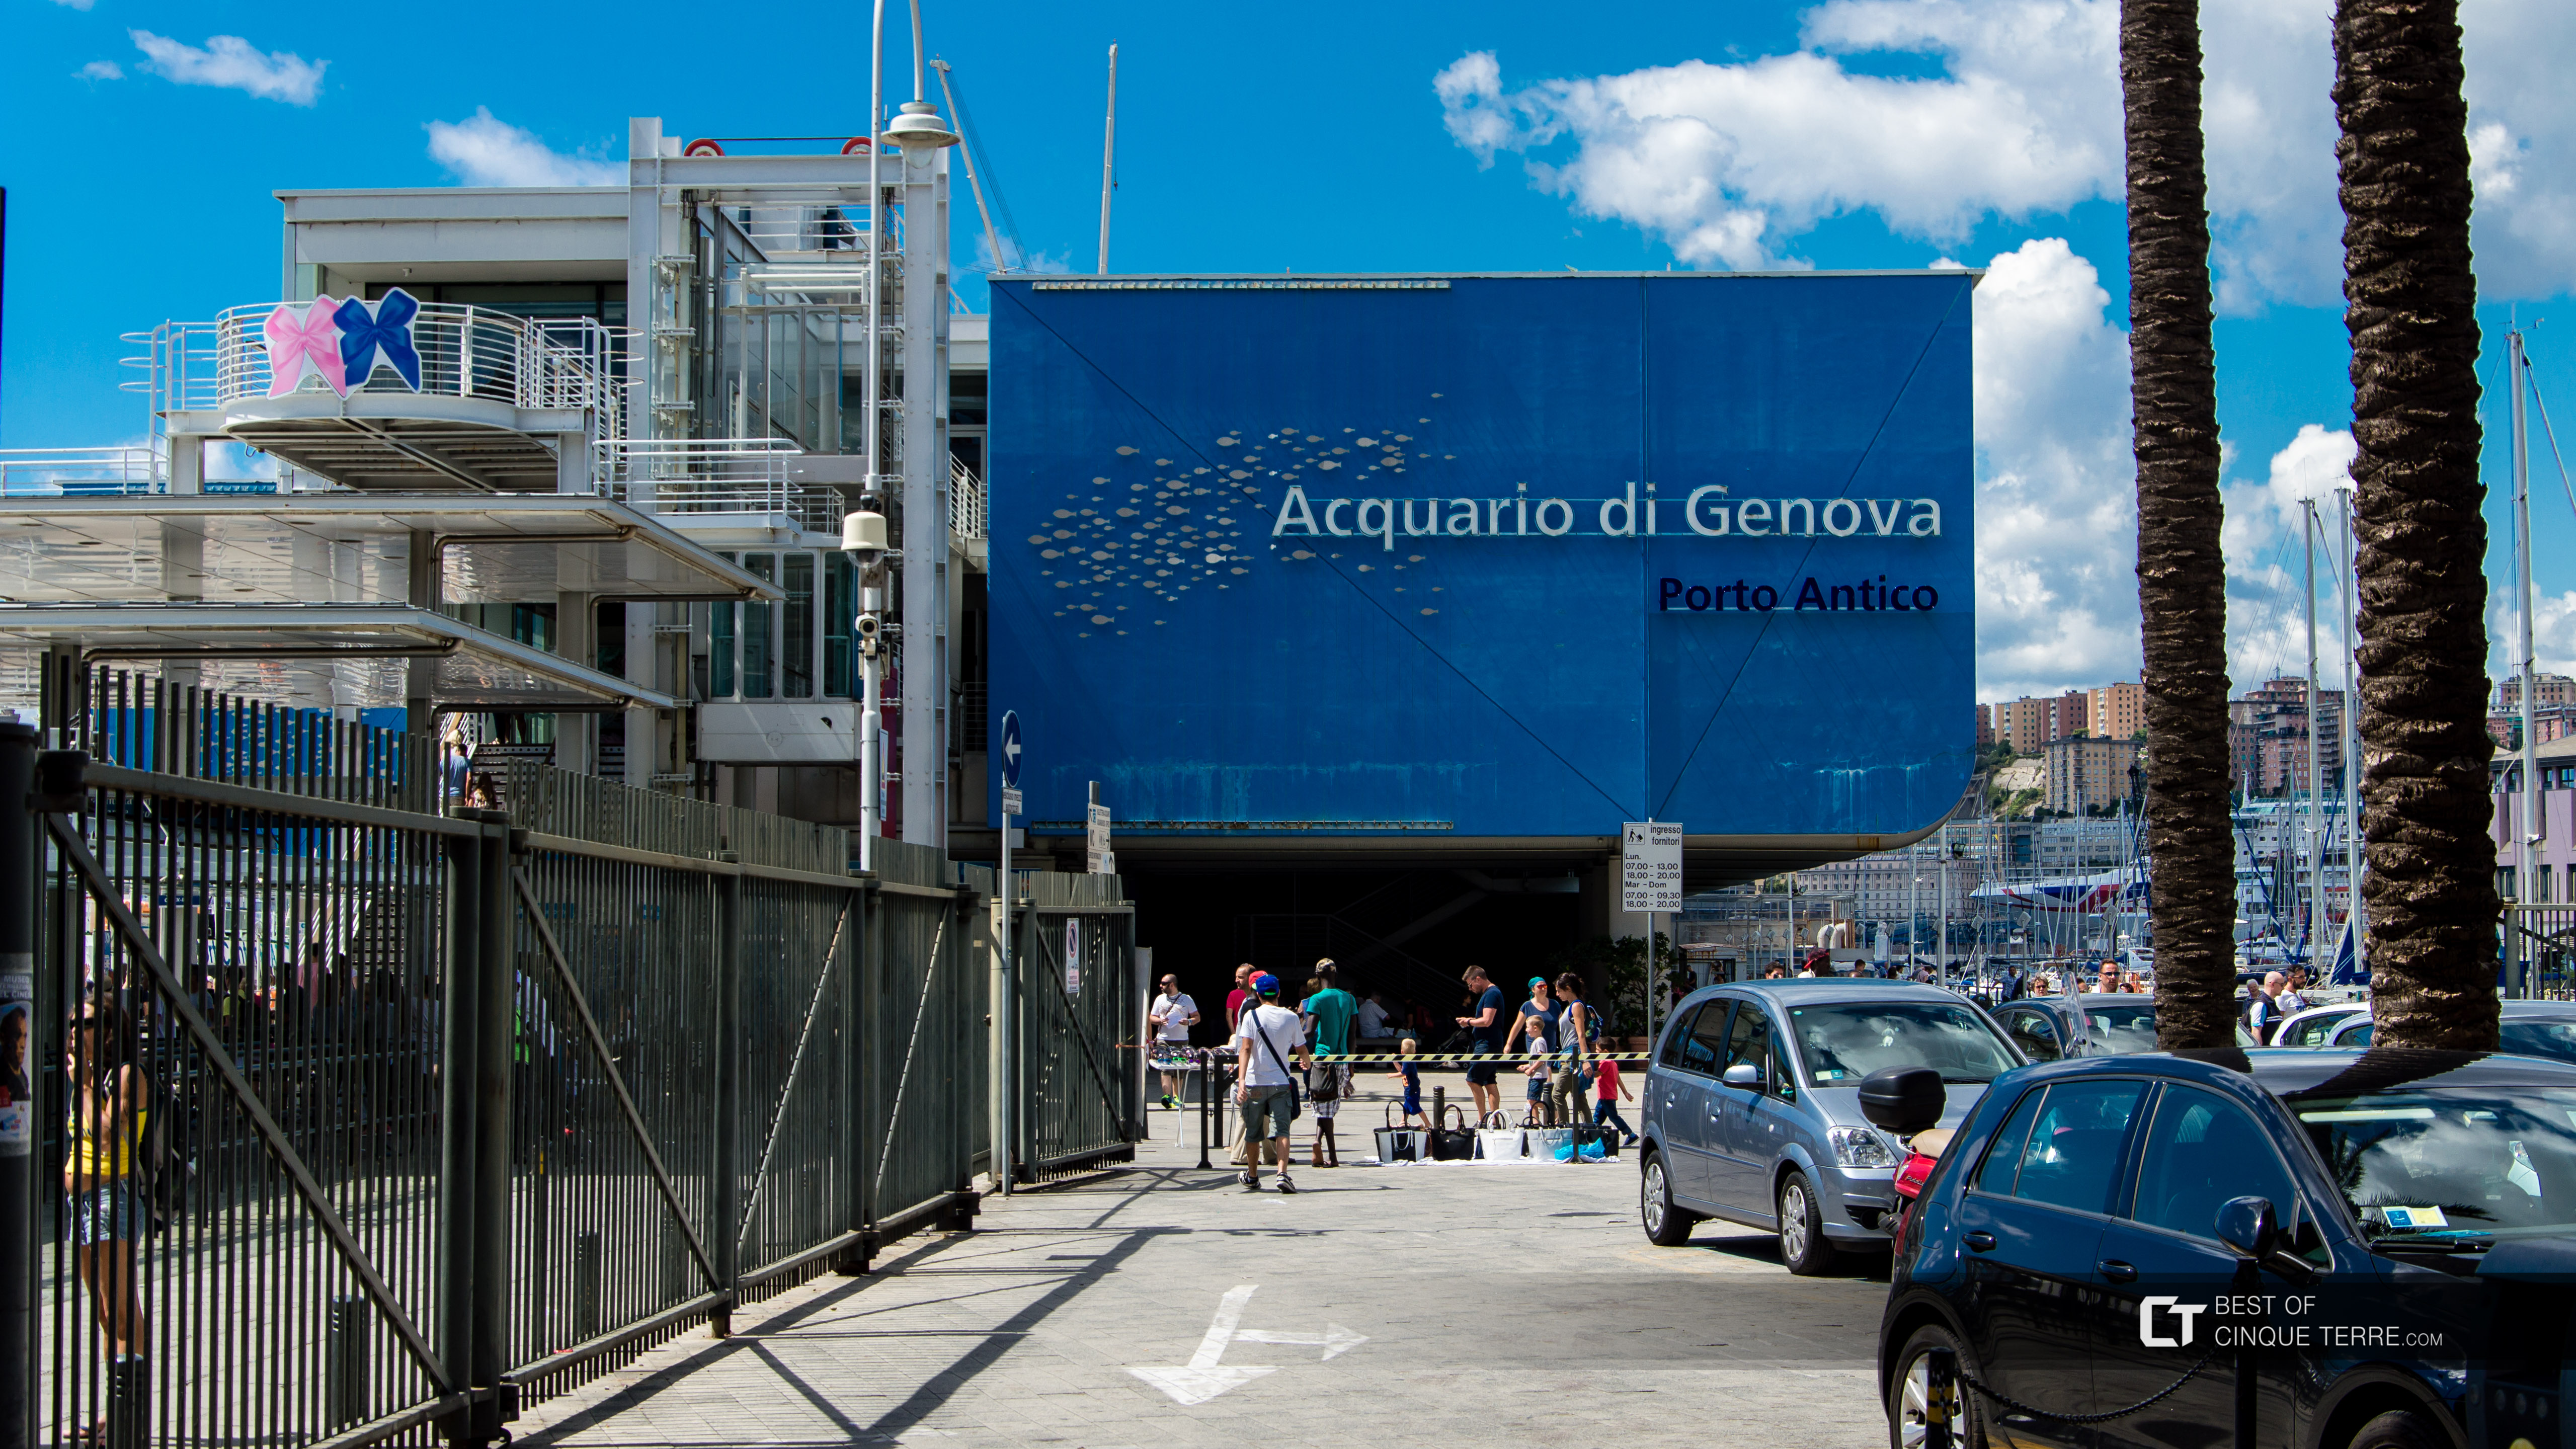 Aquarium of Genoa, Italy